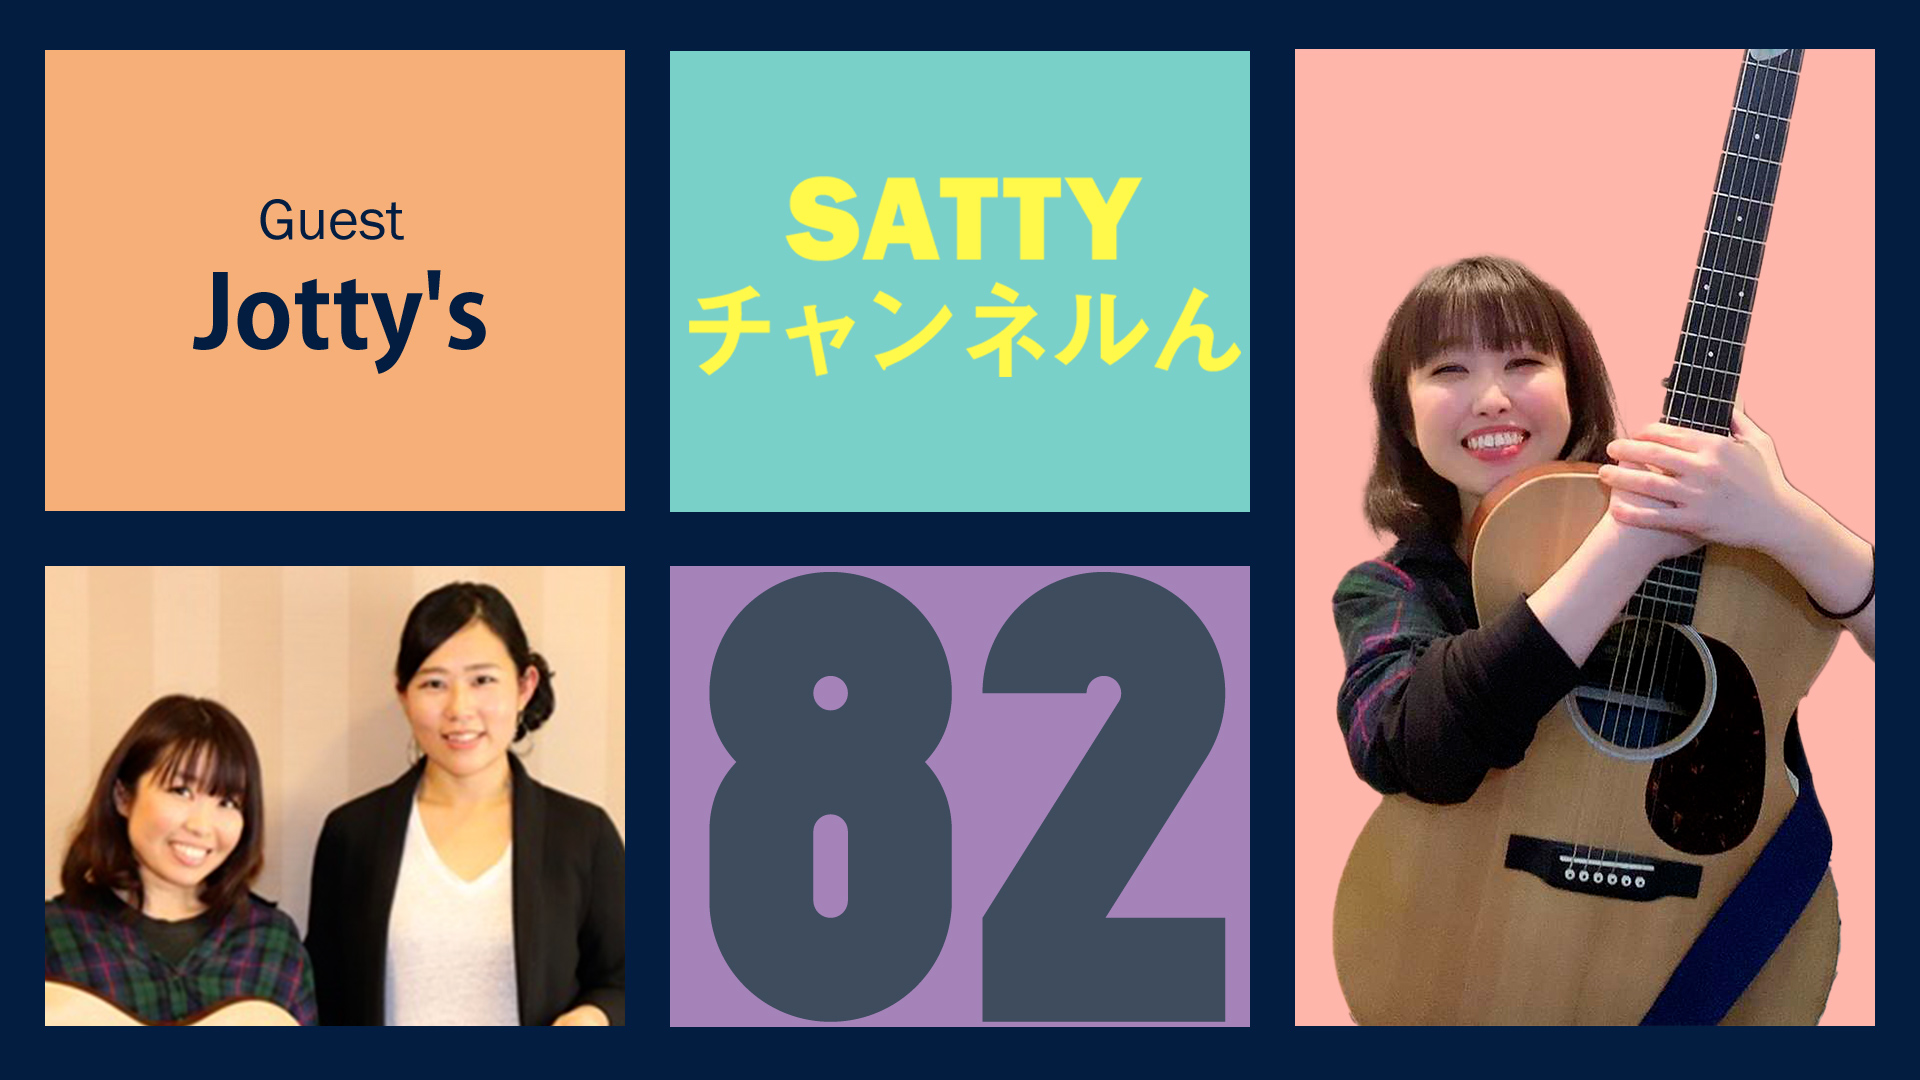 Guest Jotty'sとトーク! ラジオ「Sattyチャンネルん」#82